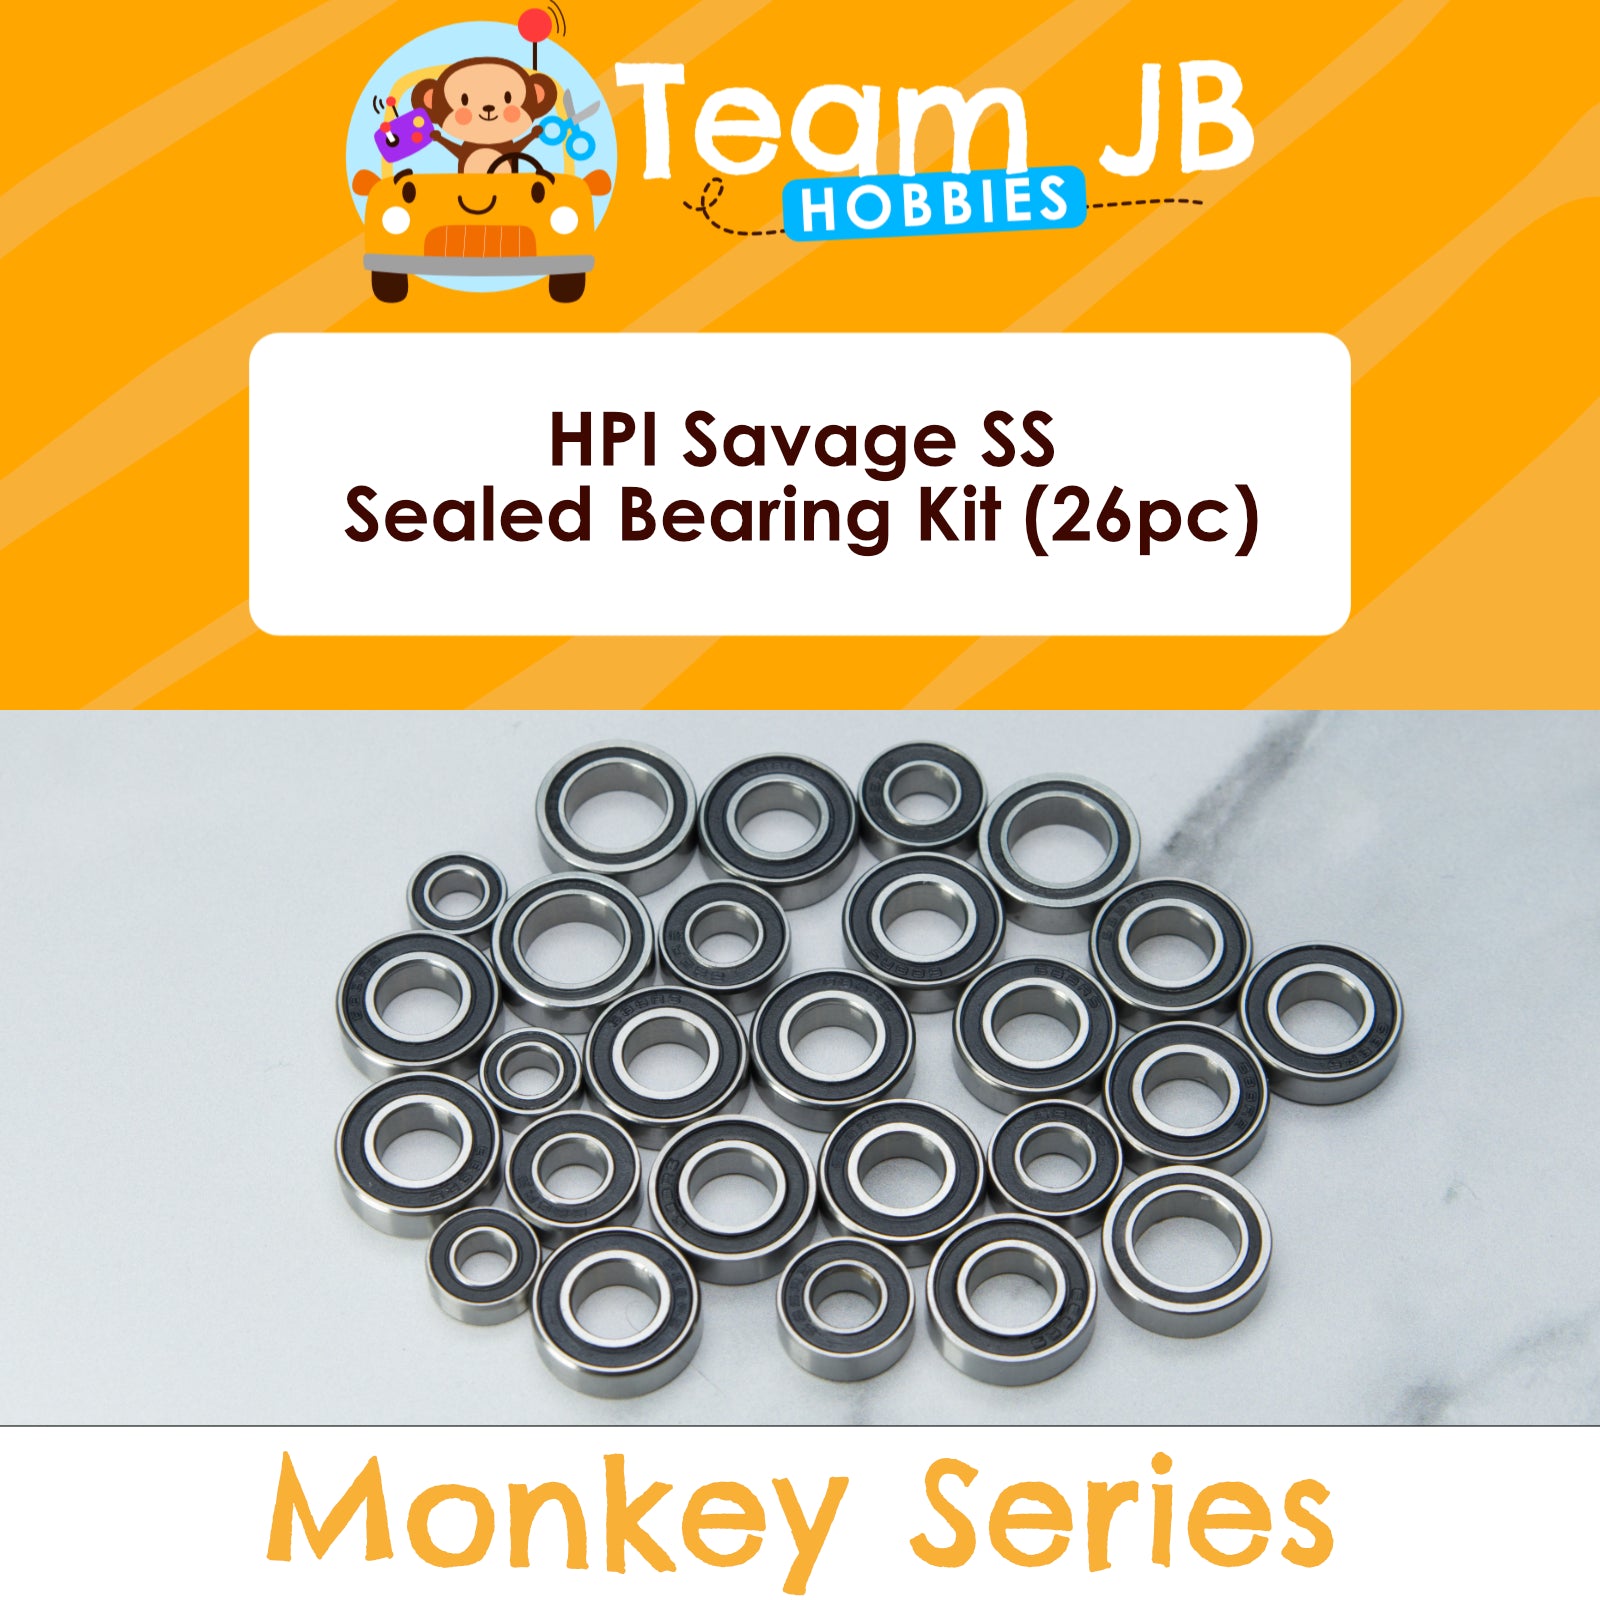 HPI Savage SS - Sealed Bearing Kit